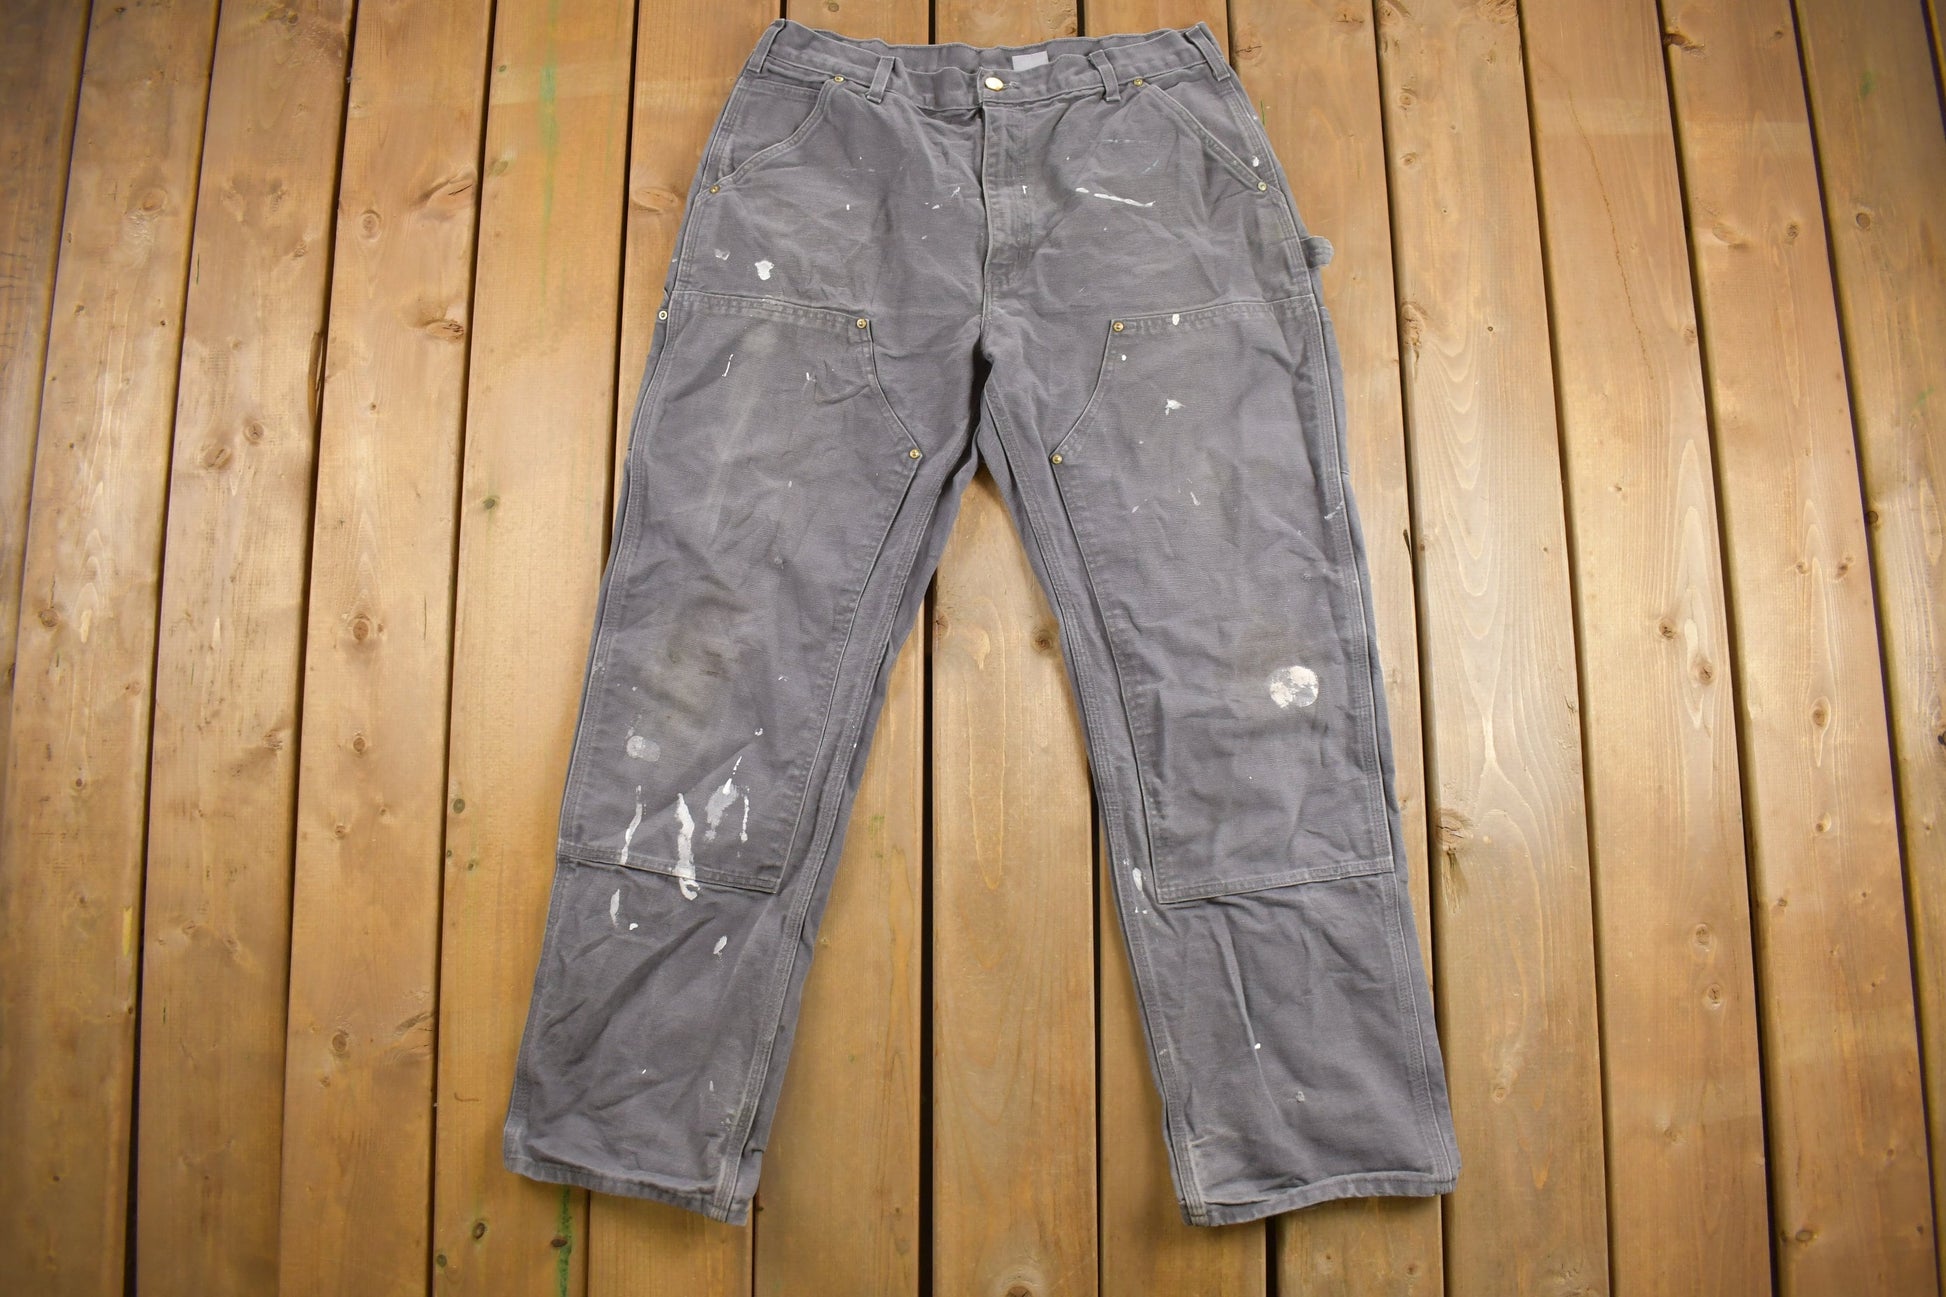 Vintage Workwear Pants Carhartt Pants Dickies Pants All Sizes 